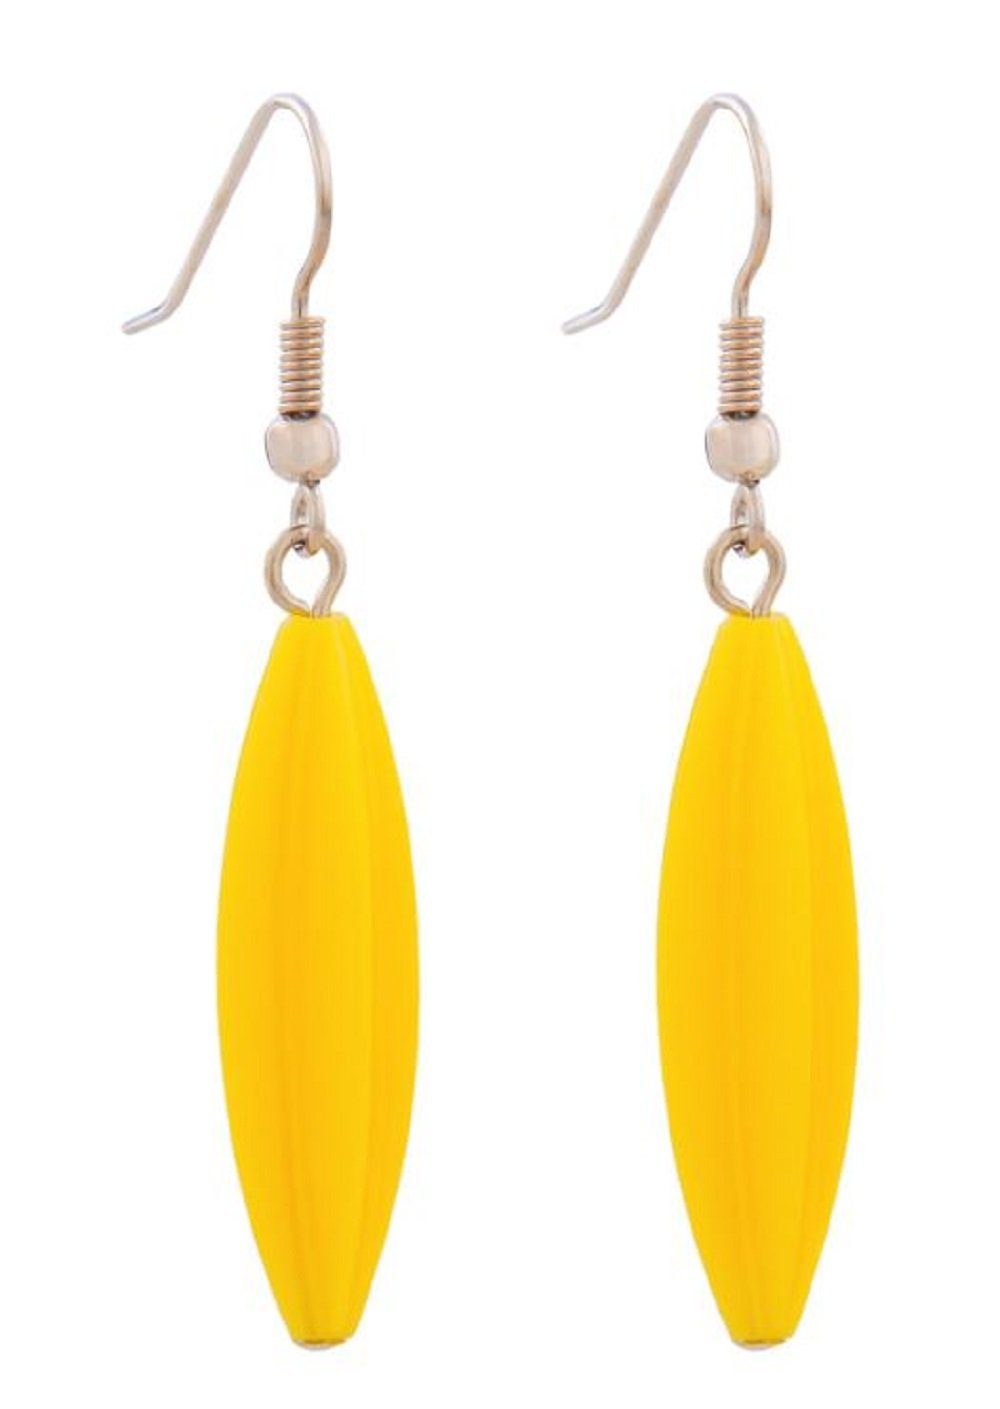 unbespielt Paar Ohrhänger Ohrhaken Ohrringe Rillenolive Kunststoff gelb glänzend 30 x 9 mm, Modeschmuck für Damen